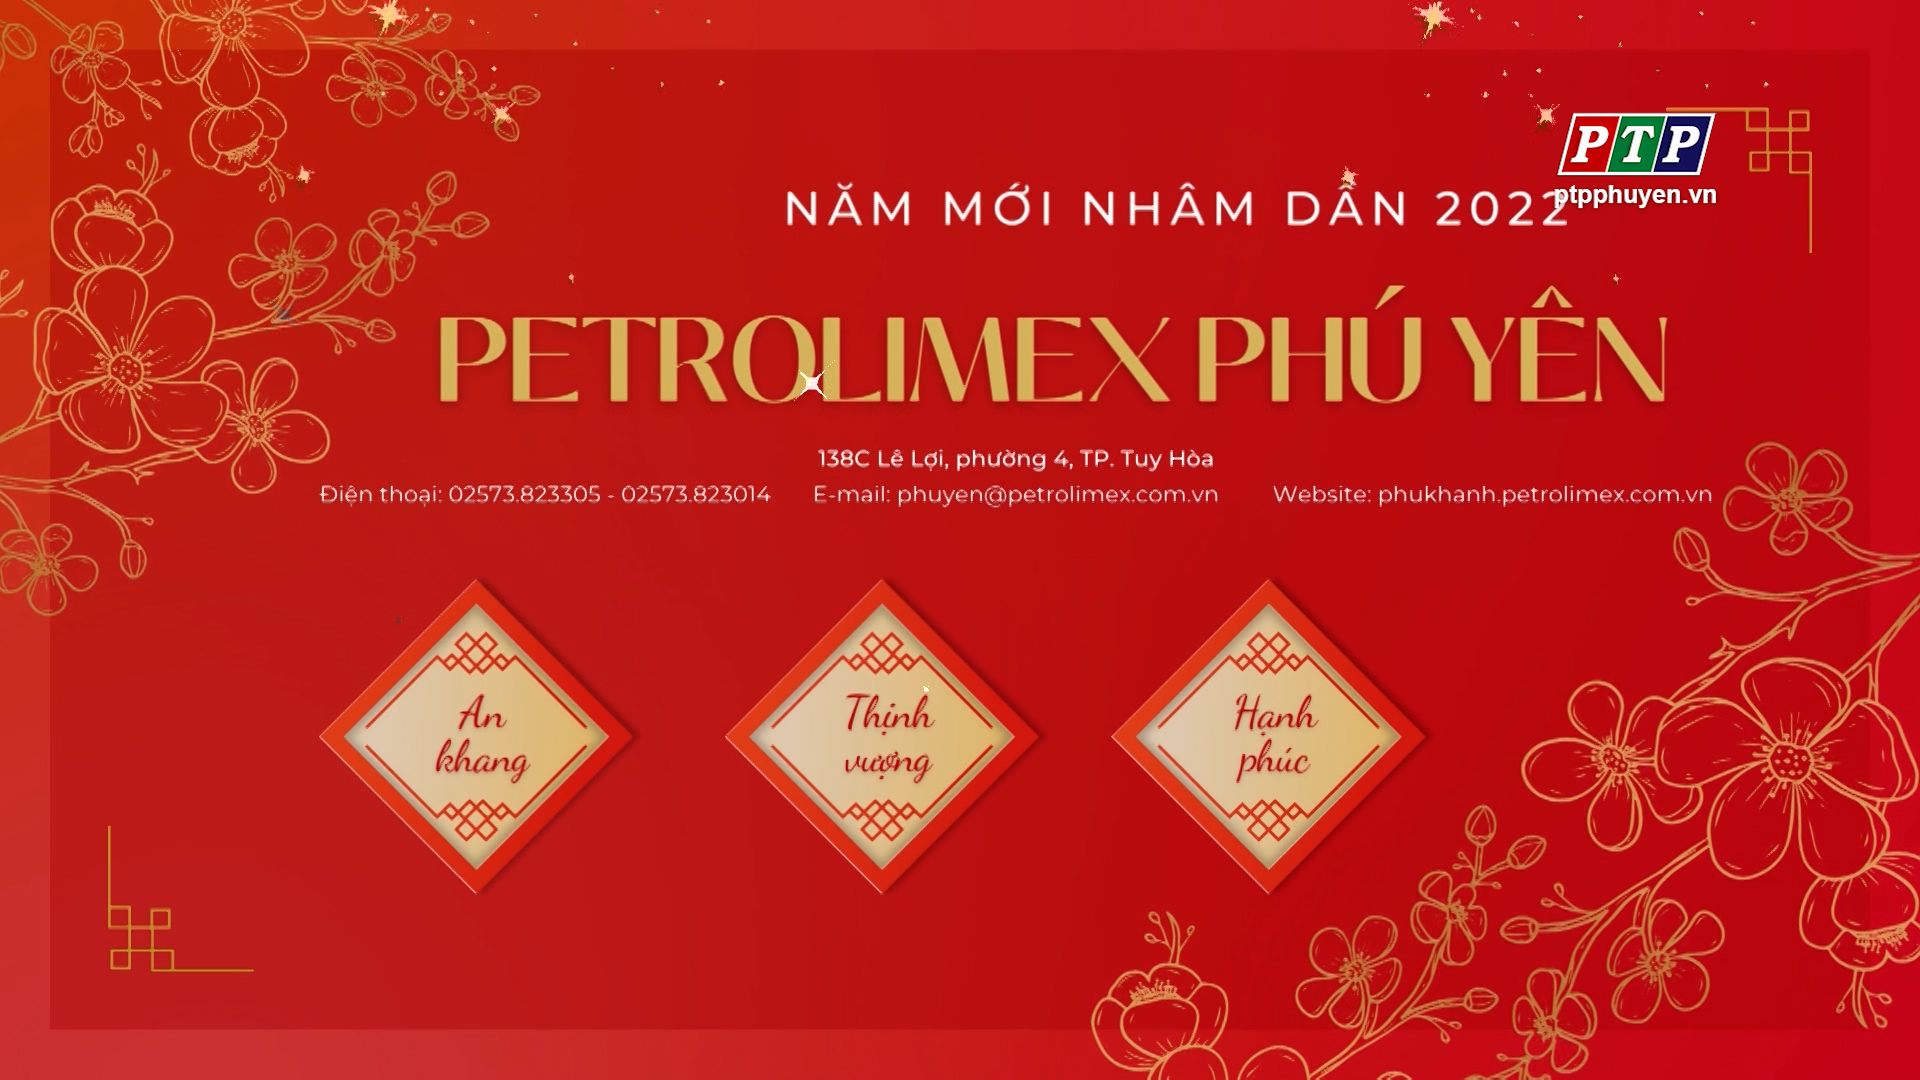 Petro Phú Yên Chúc Mừng Năm Mới